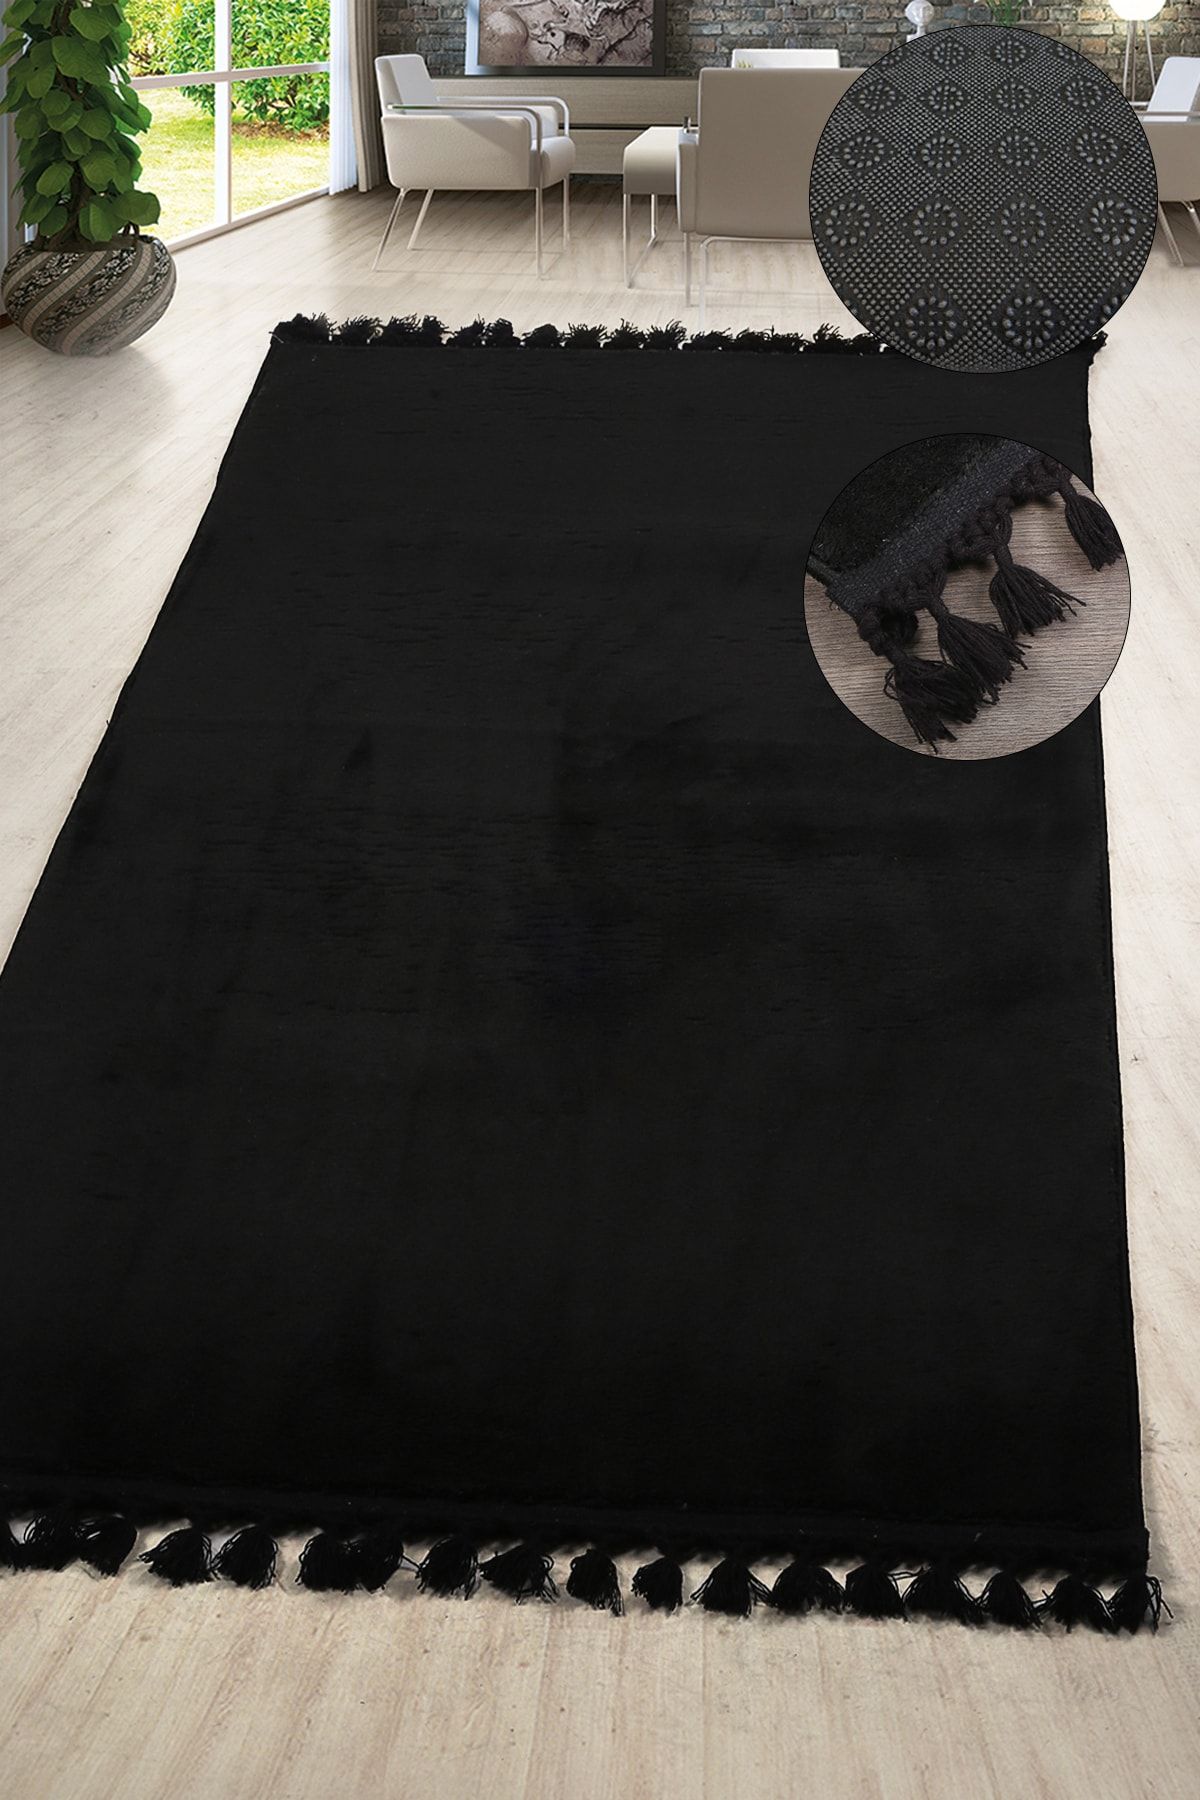 Teksev Relax Siyah Ponpon Saçaklı Kesme Yolluk Yıkanabilir Kaymaz Taban Dekoratif Oda Koridor Halısı